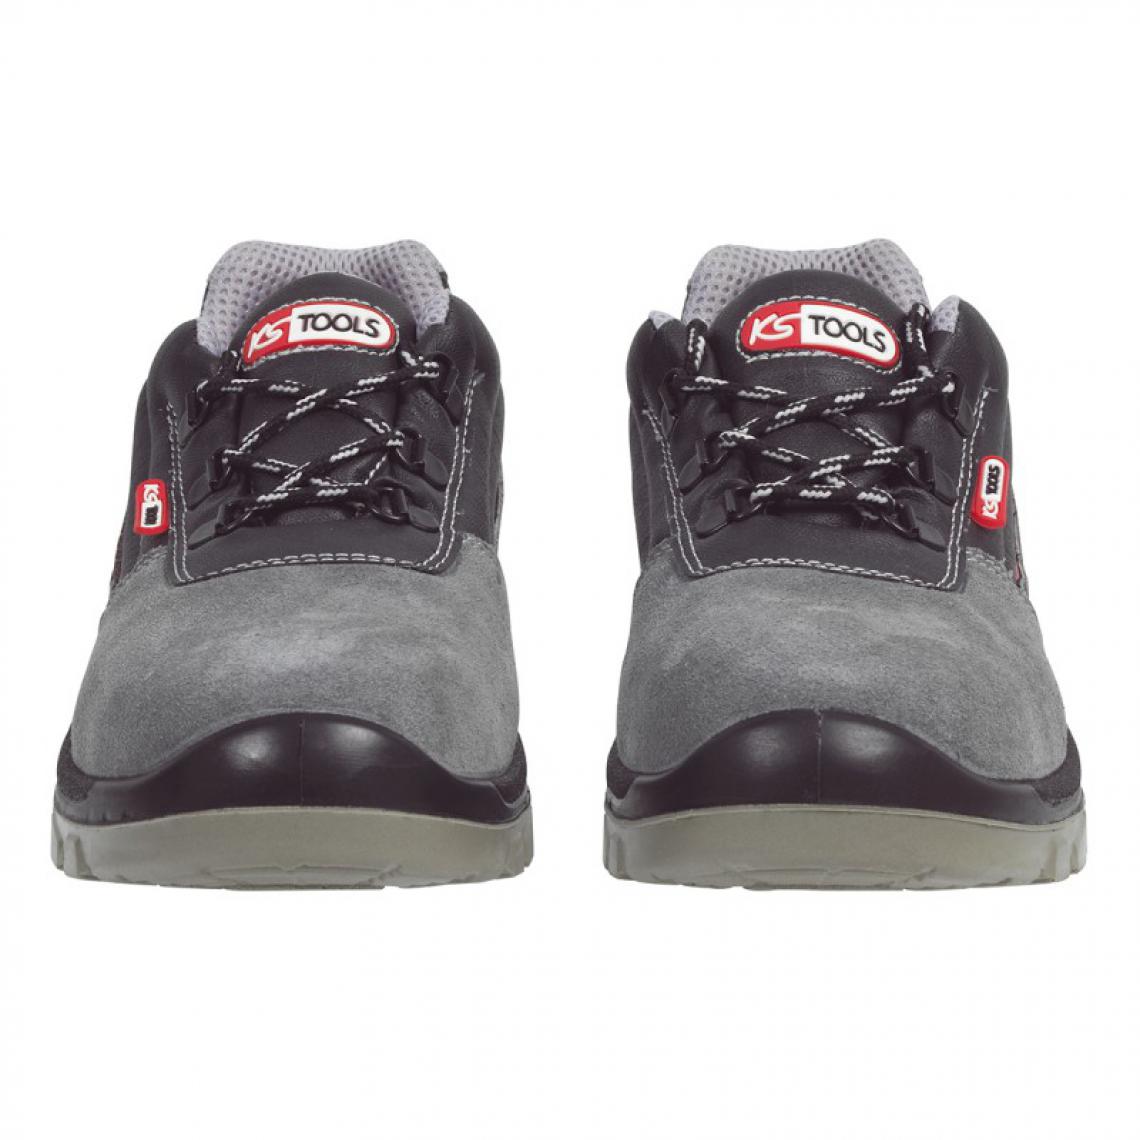 Kstools - Chaussures de sécurité KSTOOLS Couleur grise taille 44 - Equipement de Protection Individuelle